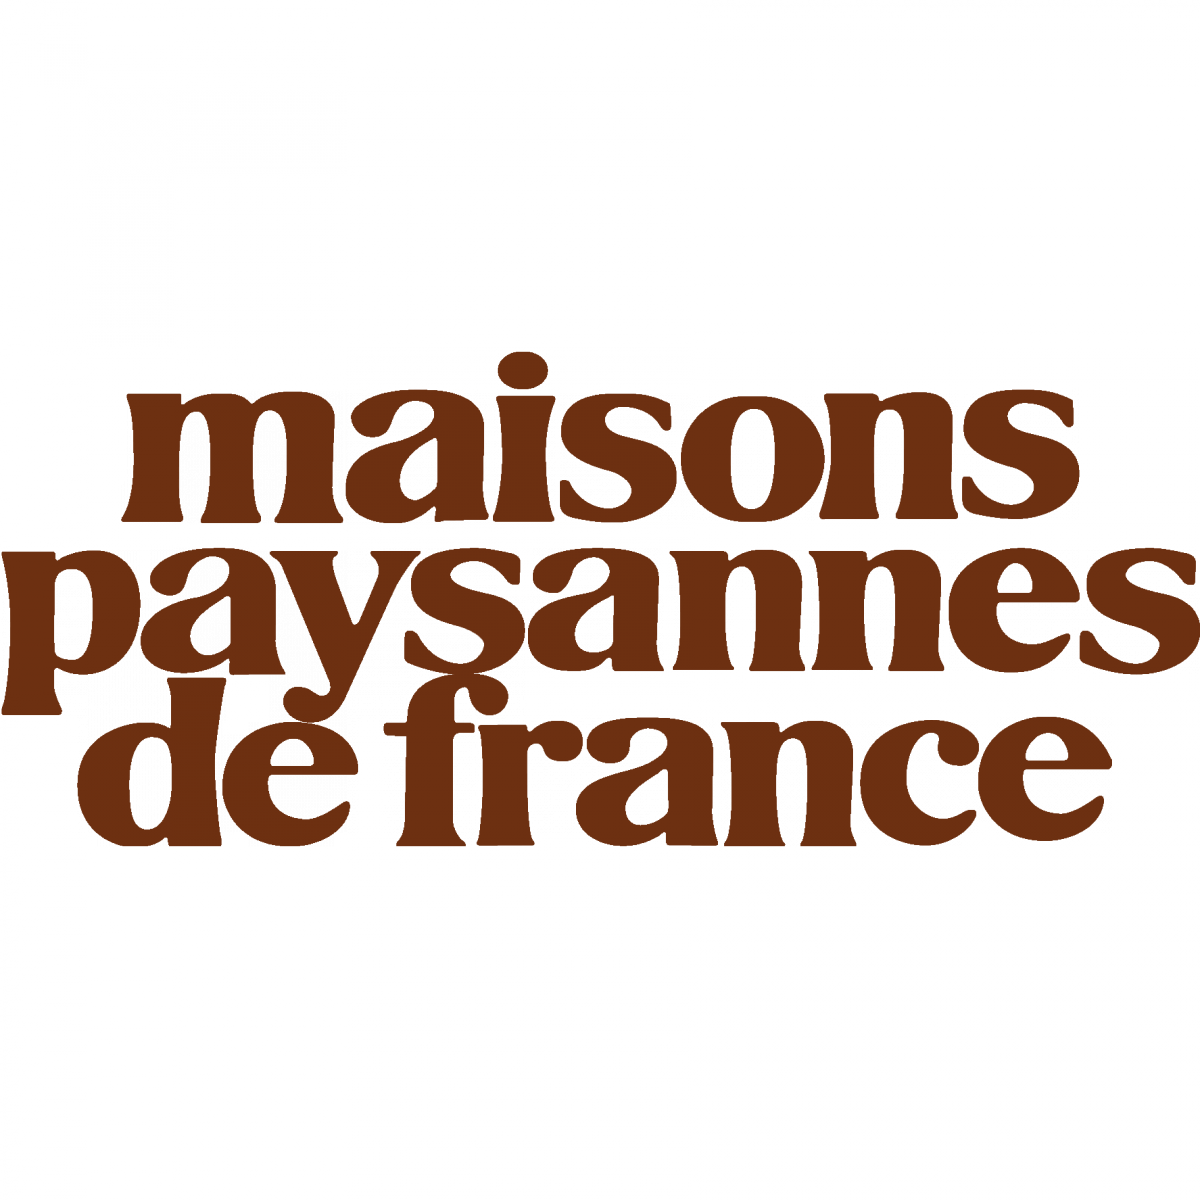 Logo Maisons Paysannes de France